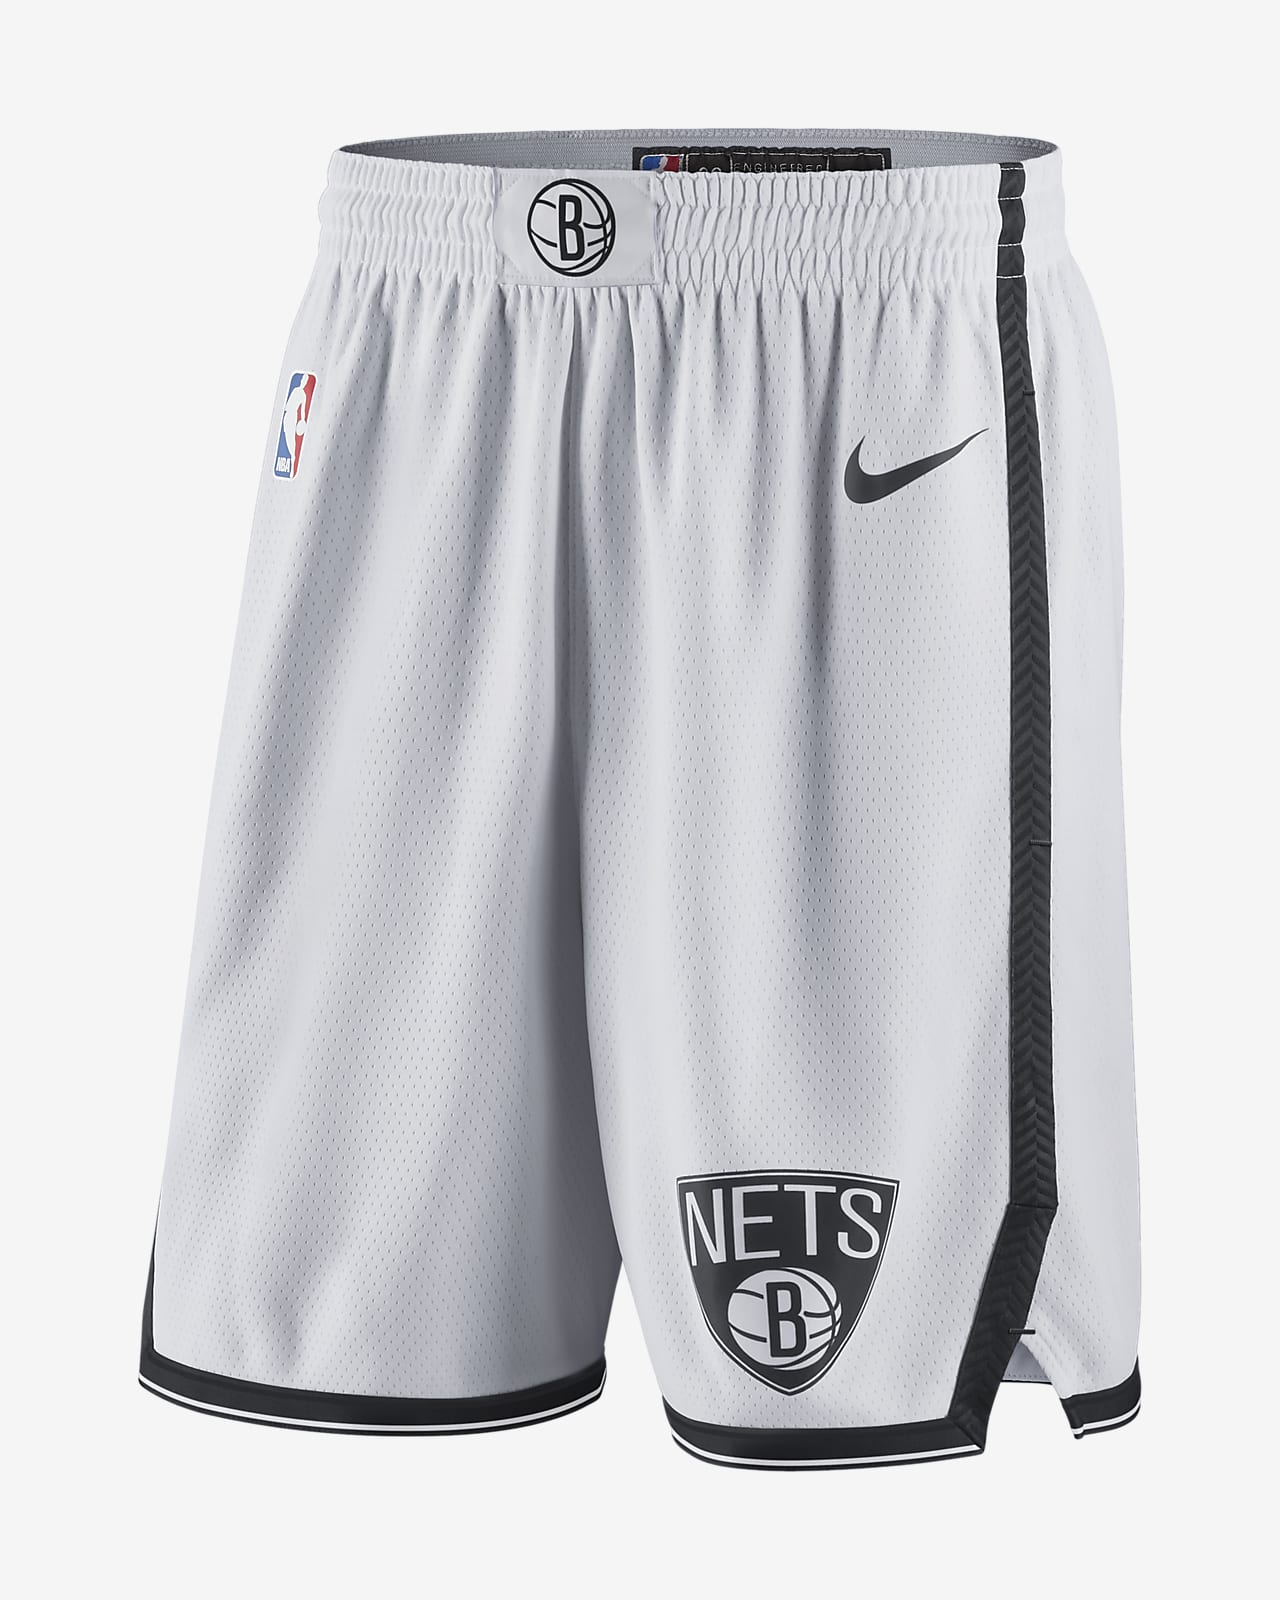 Brooklyn Nets Men's Nike NBA Swingman Shorts